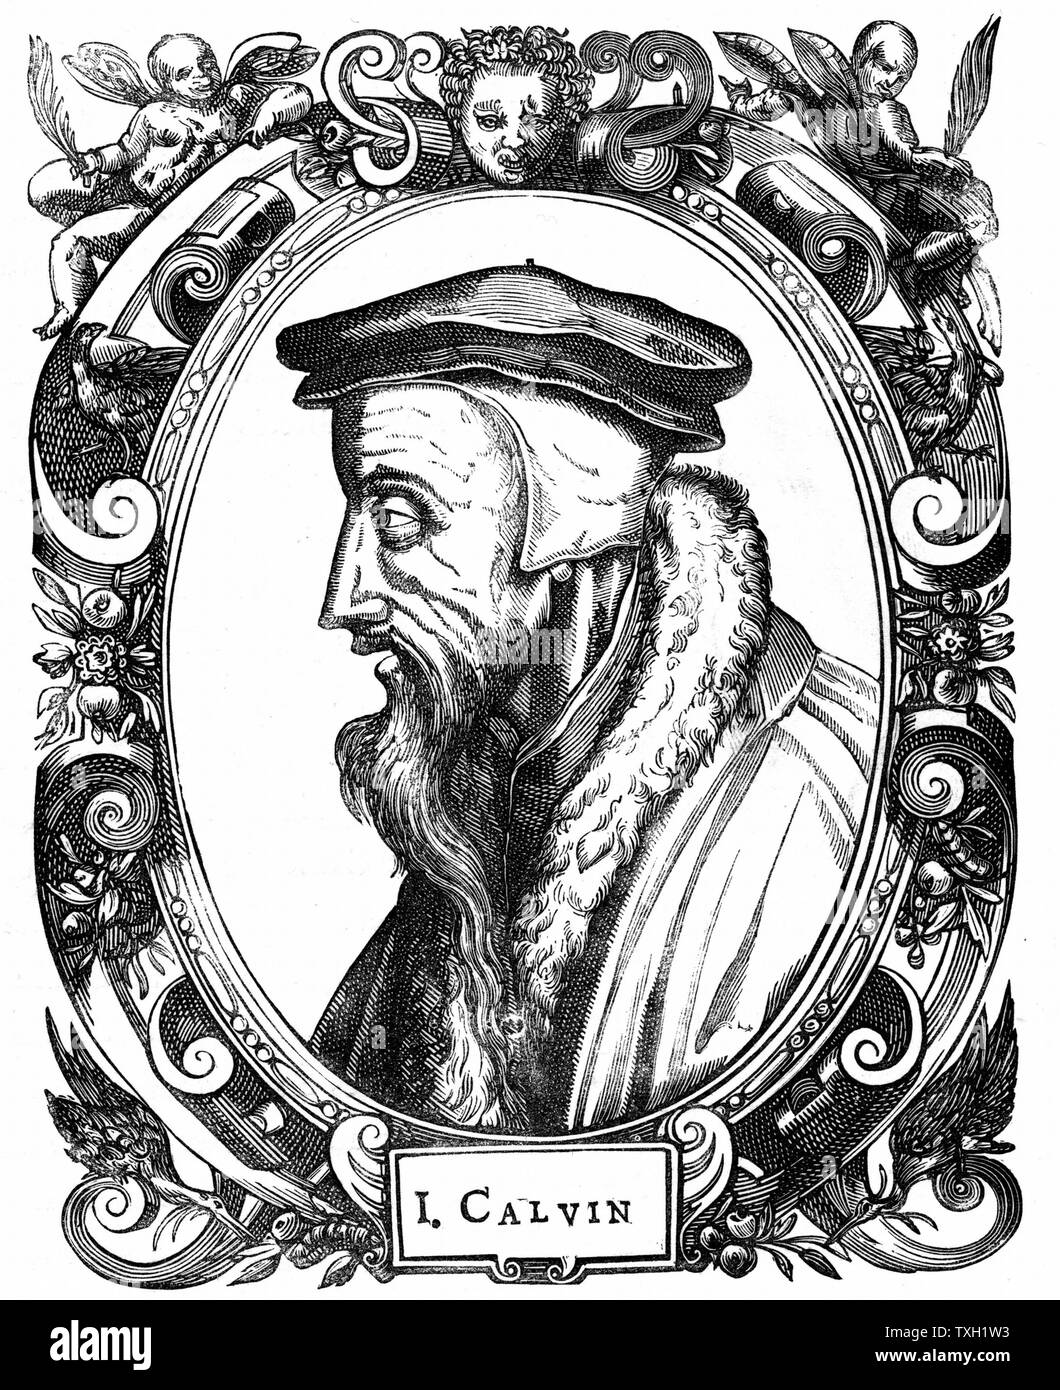 Jean Calvin französischer Theologe und Reformator. Er ließ sich in Genf und war führende Figur in der protestantischen Reformation. Er gab seinen Namen auf die protestantische Lehre, der Calvinismus. Holzschnitt Stockfoto